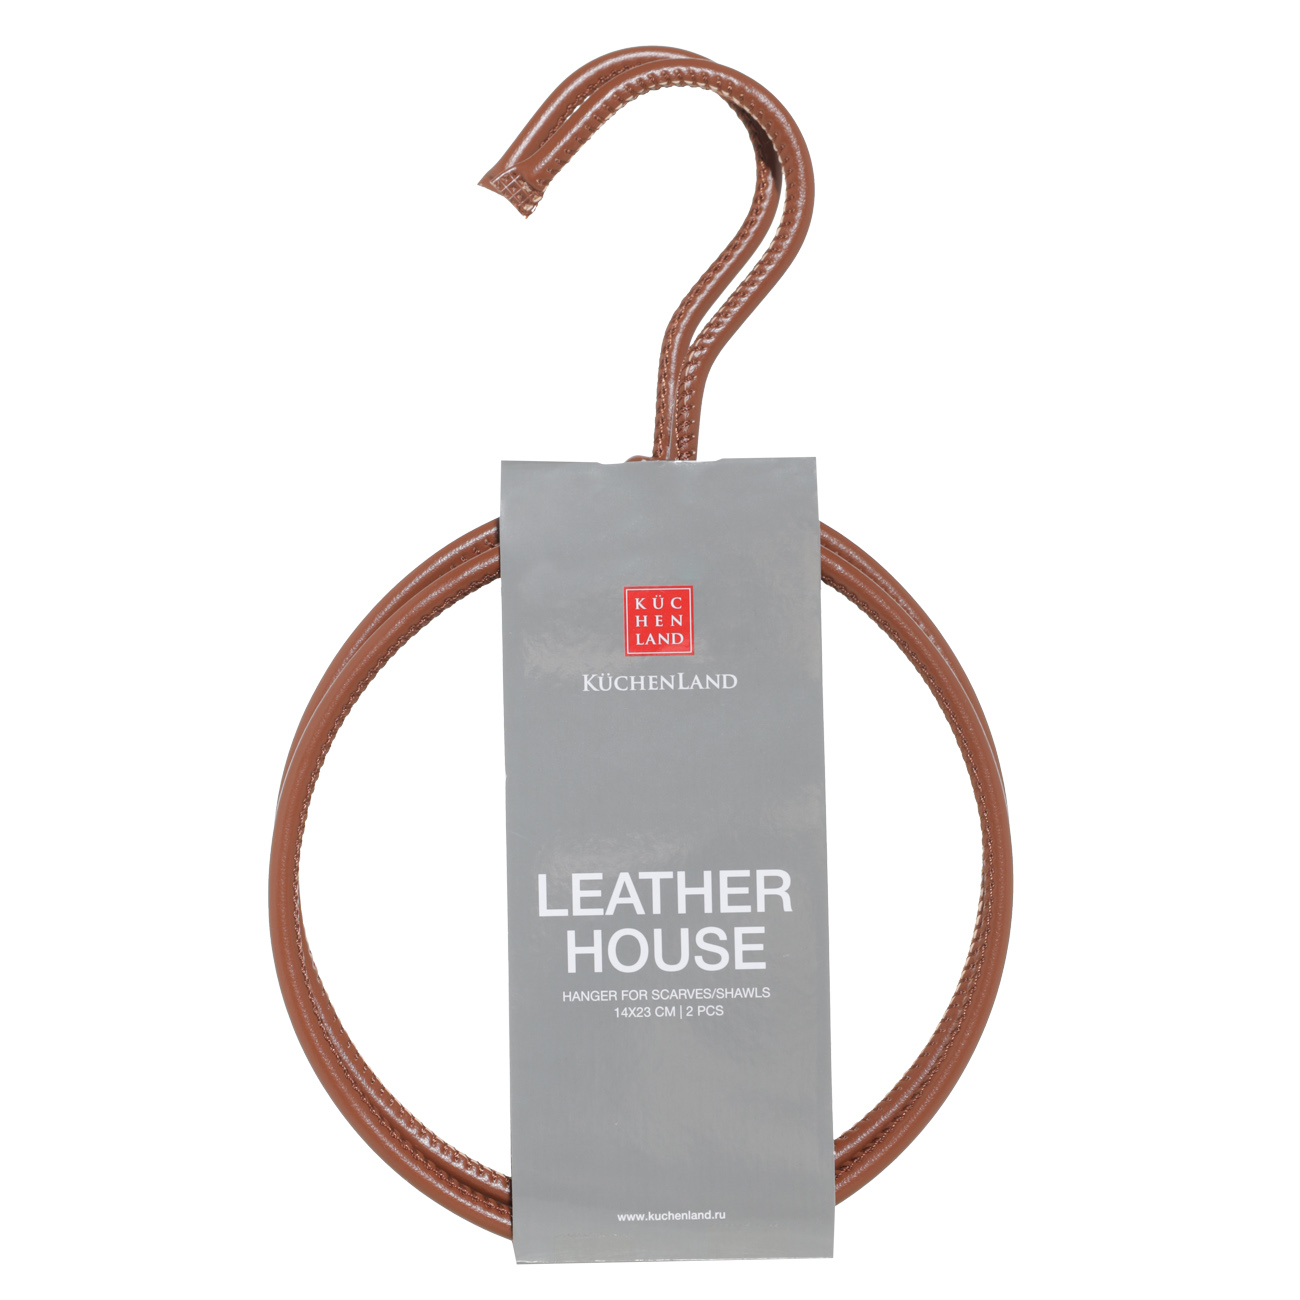 Вешалка для шарфов/платков, 14х23 см, 2 шт, искусственная кожа, коричневая, Leather house изображение № 2